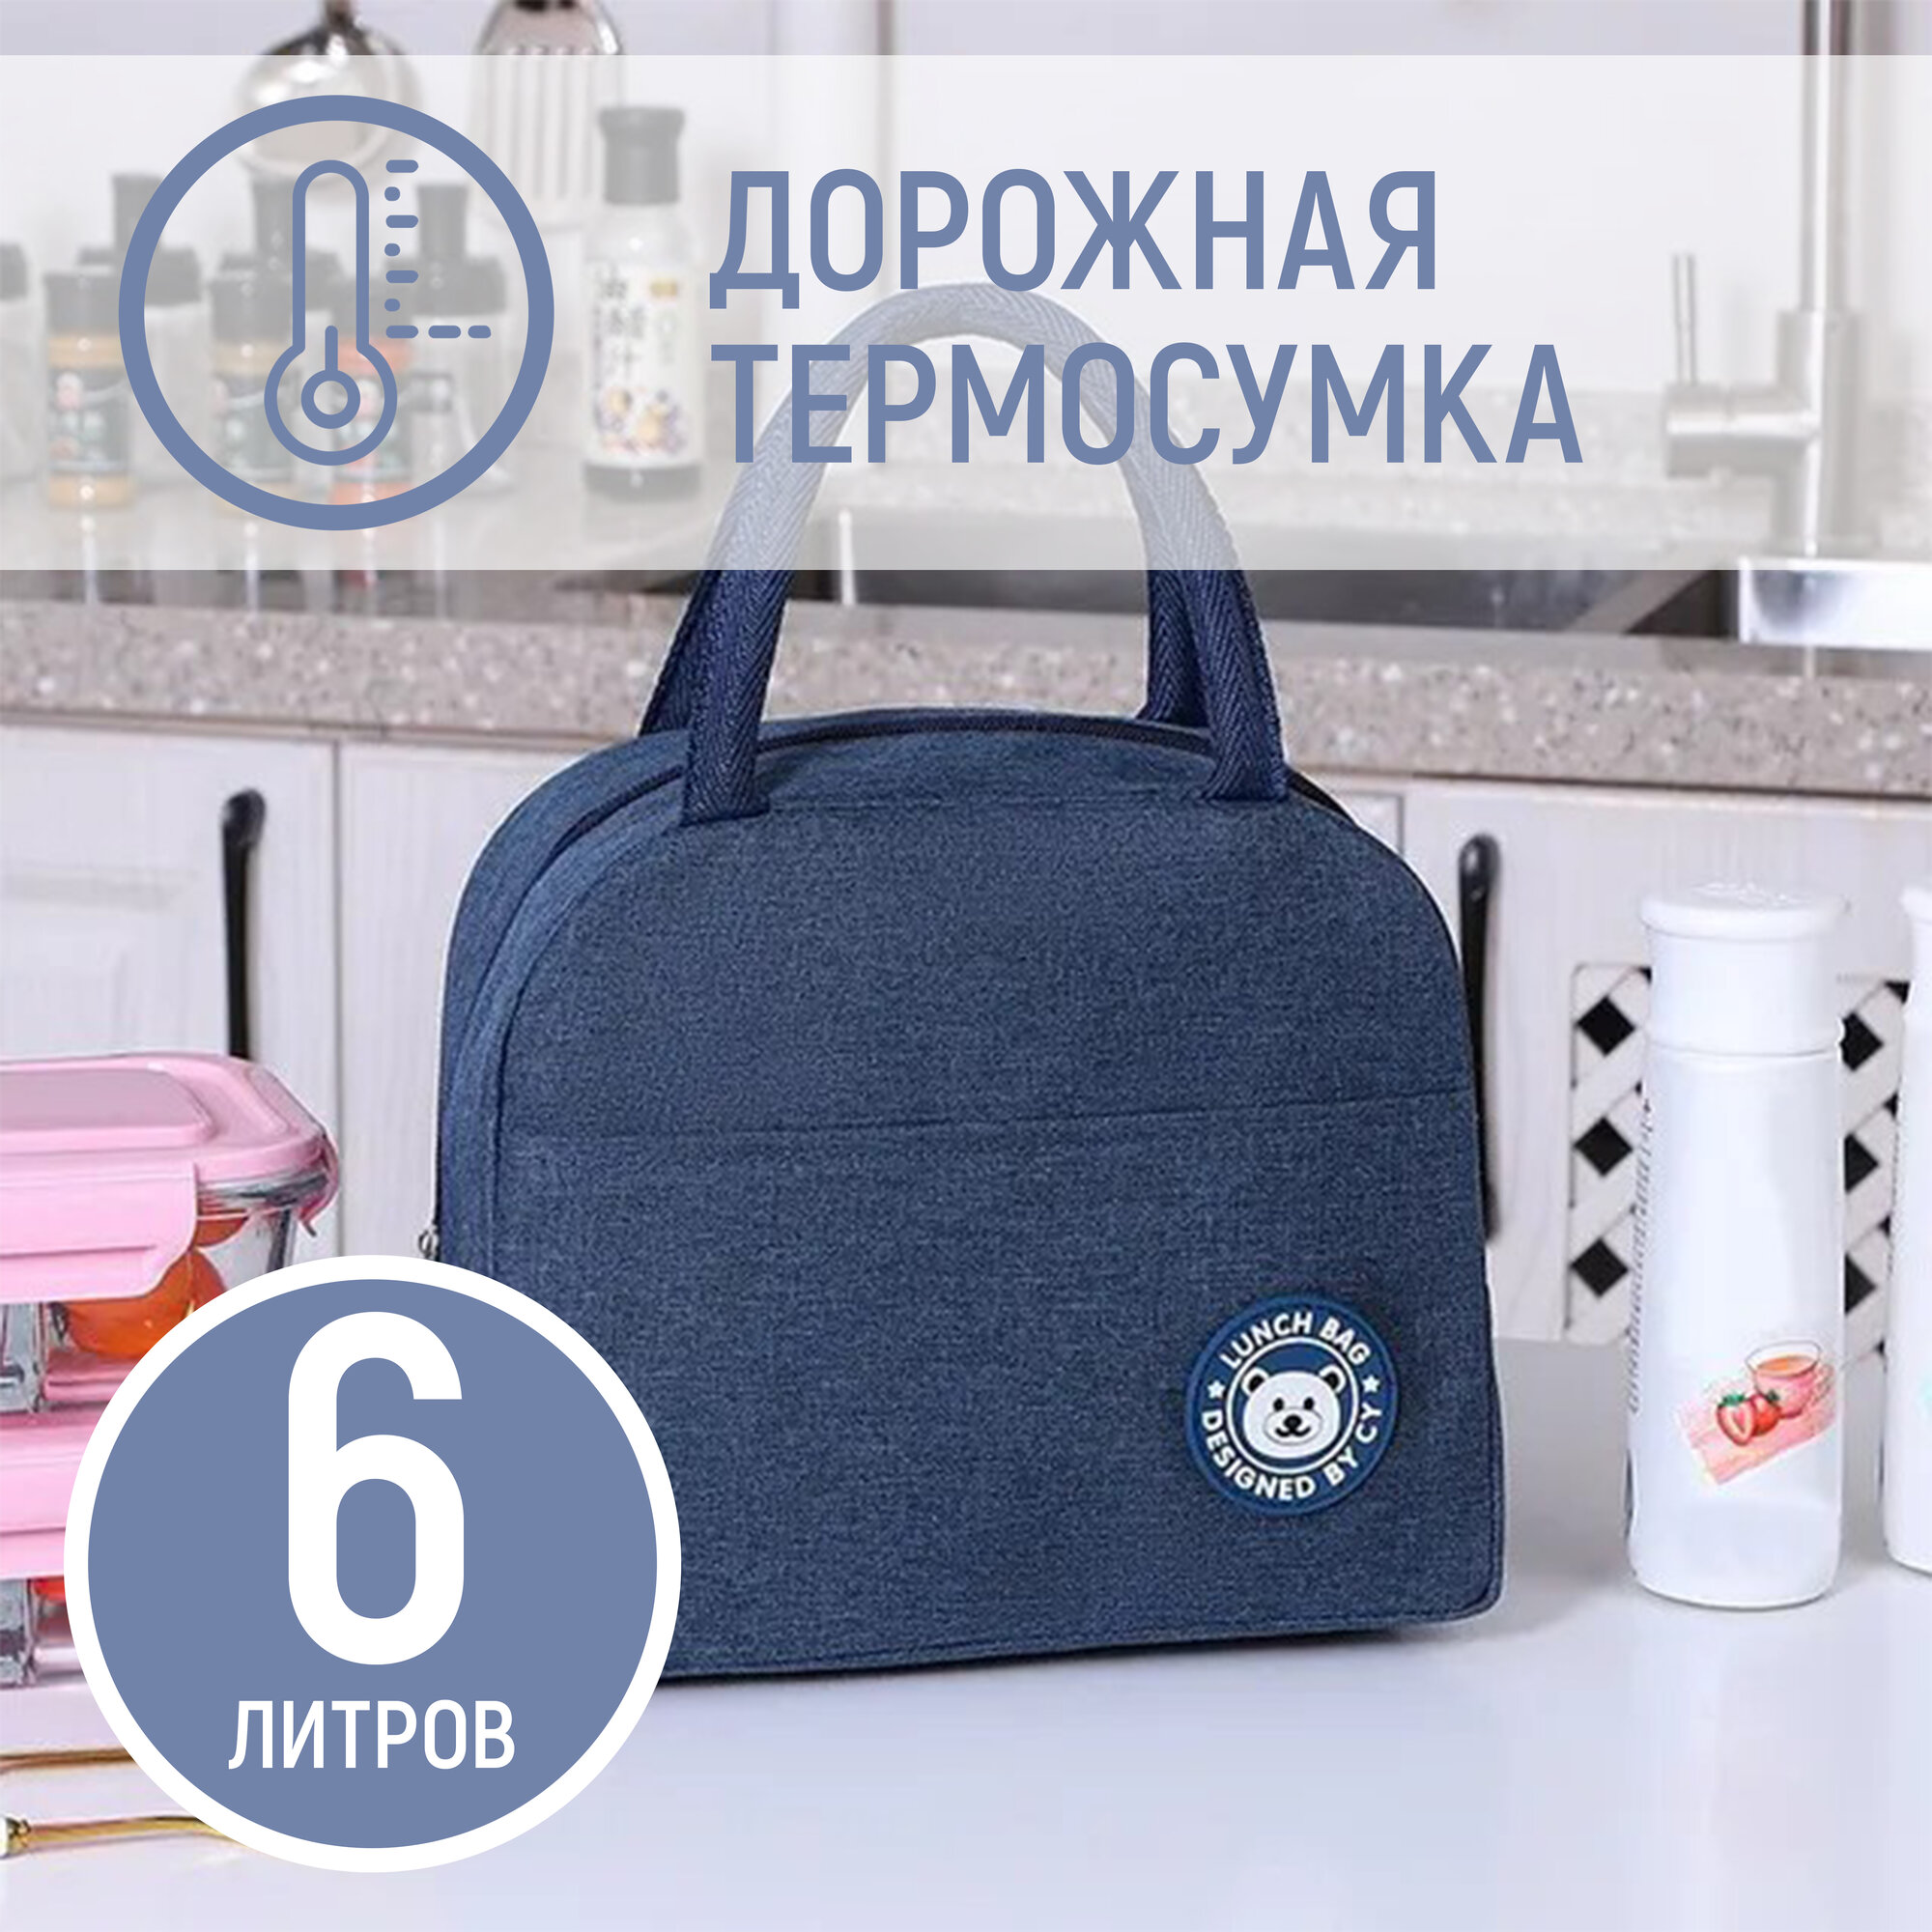 Дорожная термосумка сумка для обеда, ланч-бокса и путешествий 23х21х13см, 6 литров, синяя